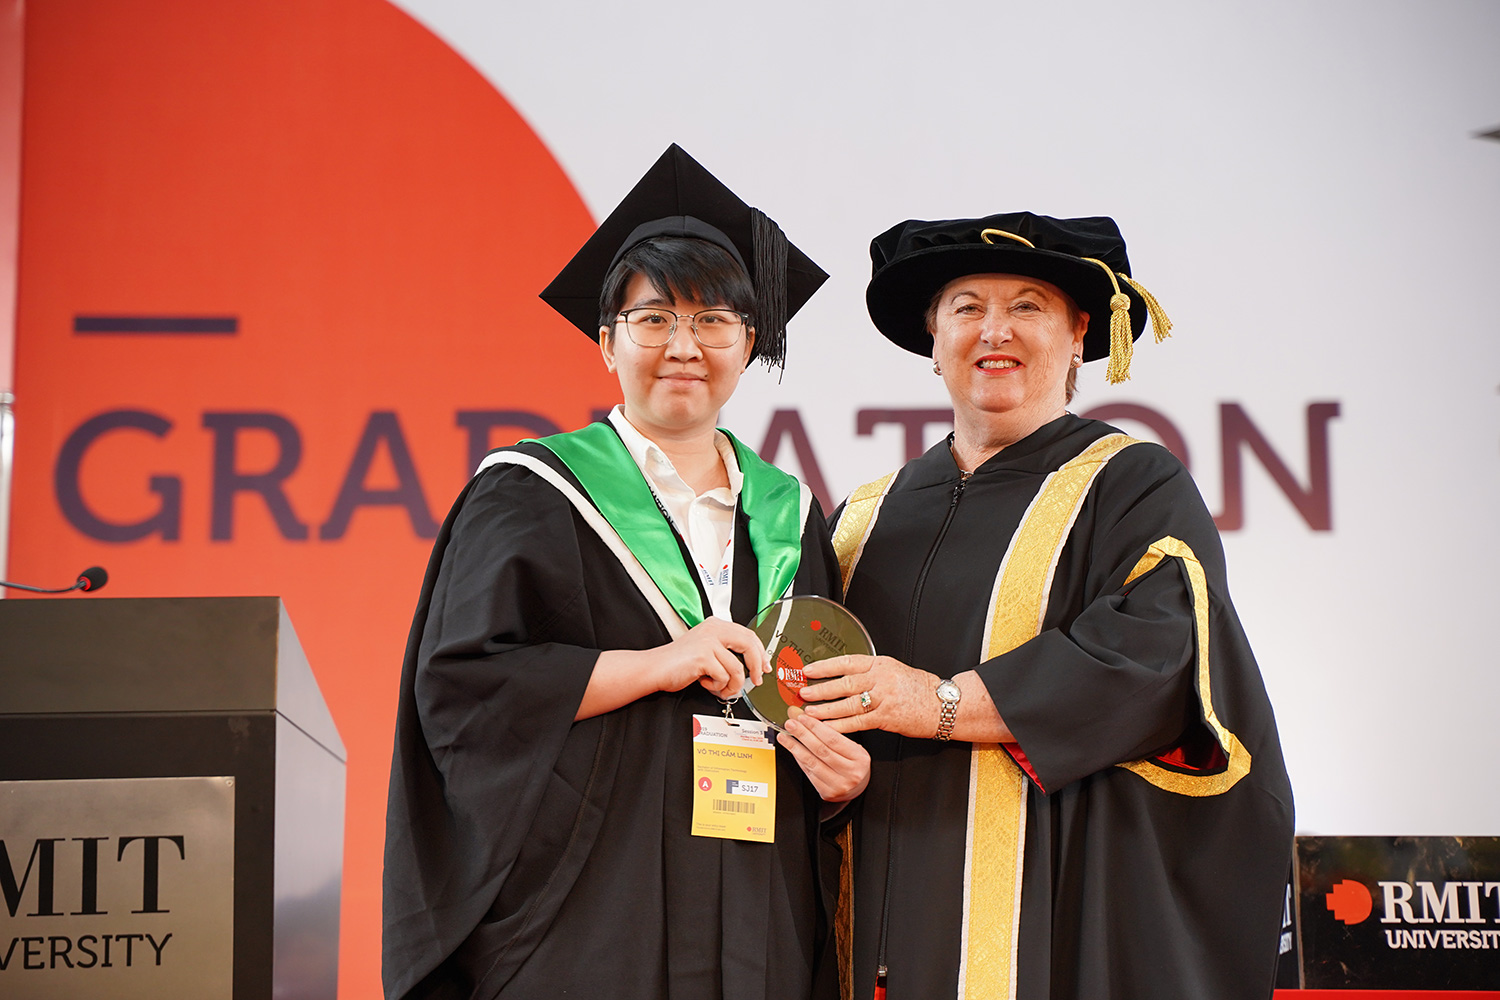 Võ Thị Cẩm Linh, nữ sinh duy nhất của ngành Công nghệ thông tin, được trao danh hiệu Thủ khoa ngành nhờ hoàn thành chương trình học với điểm số cao nhất.  